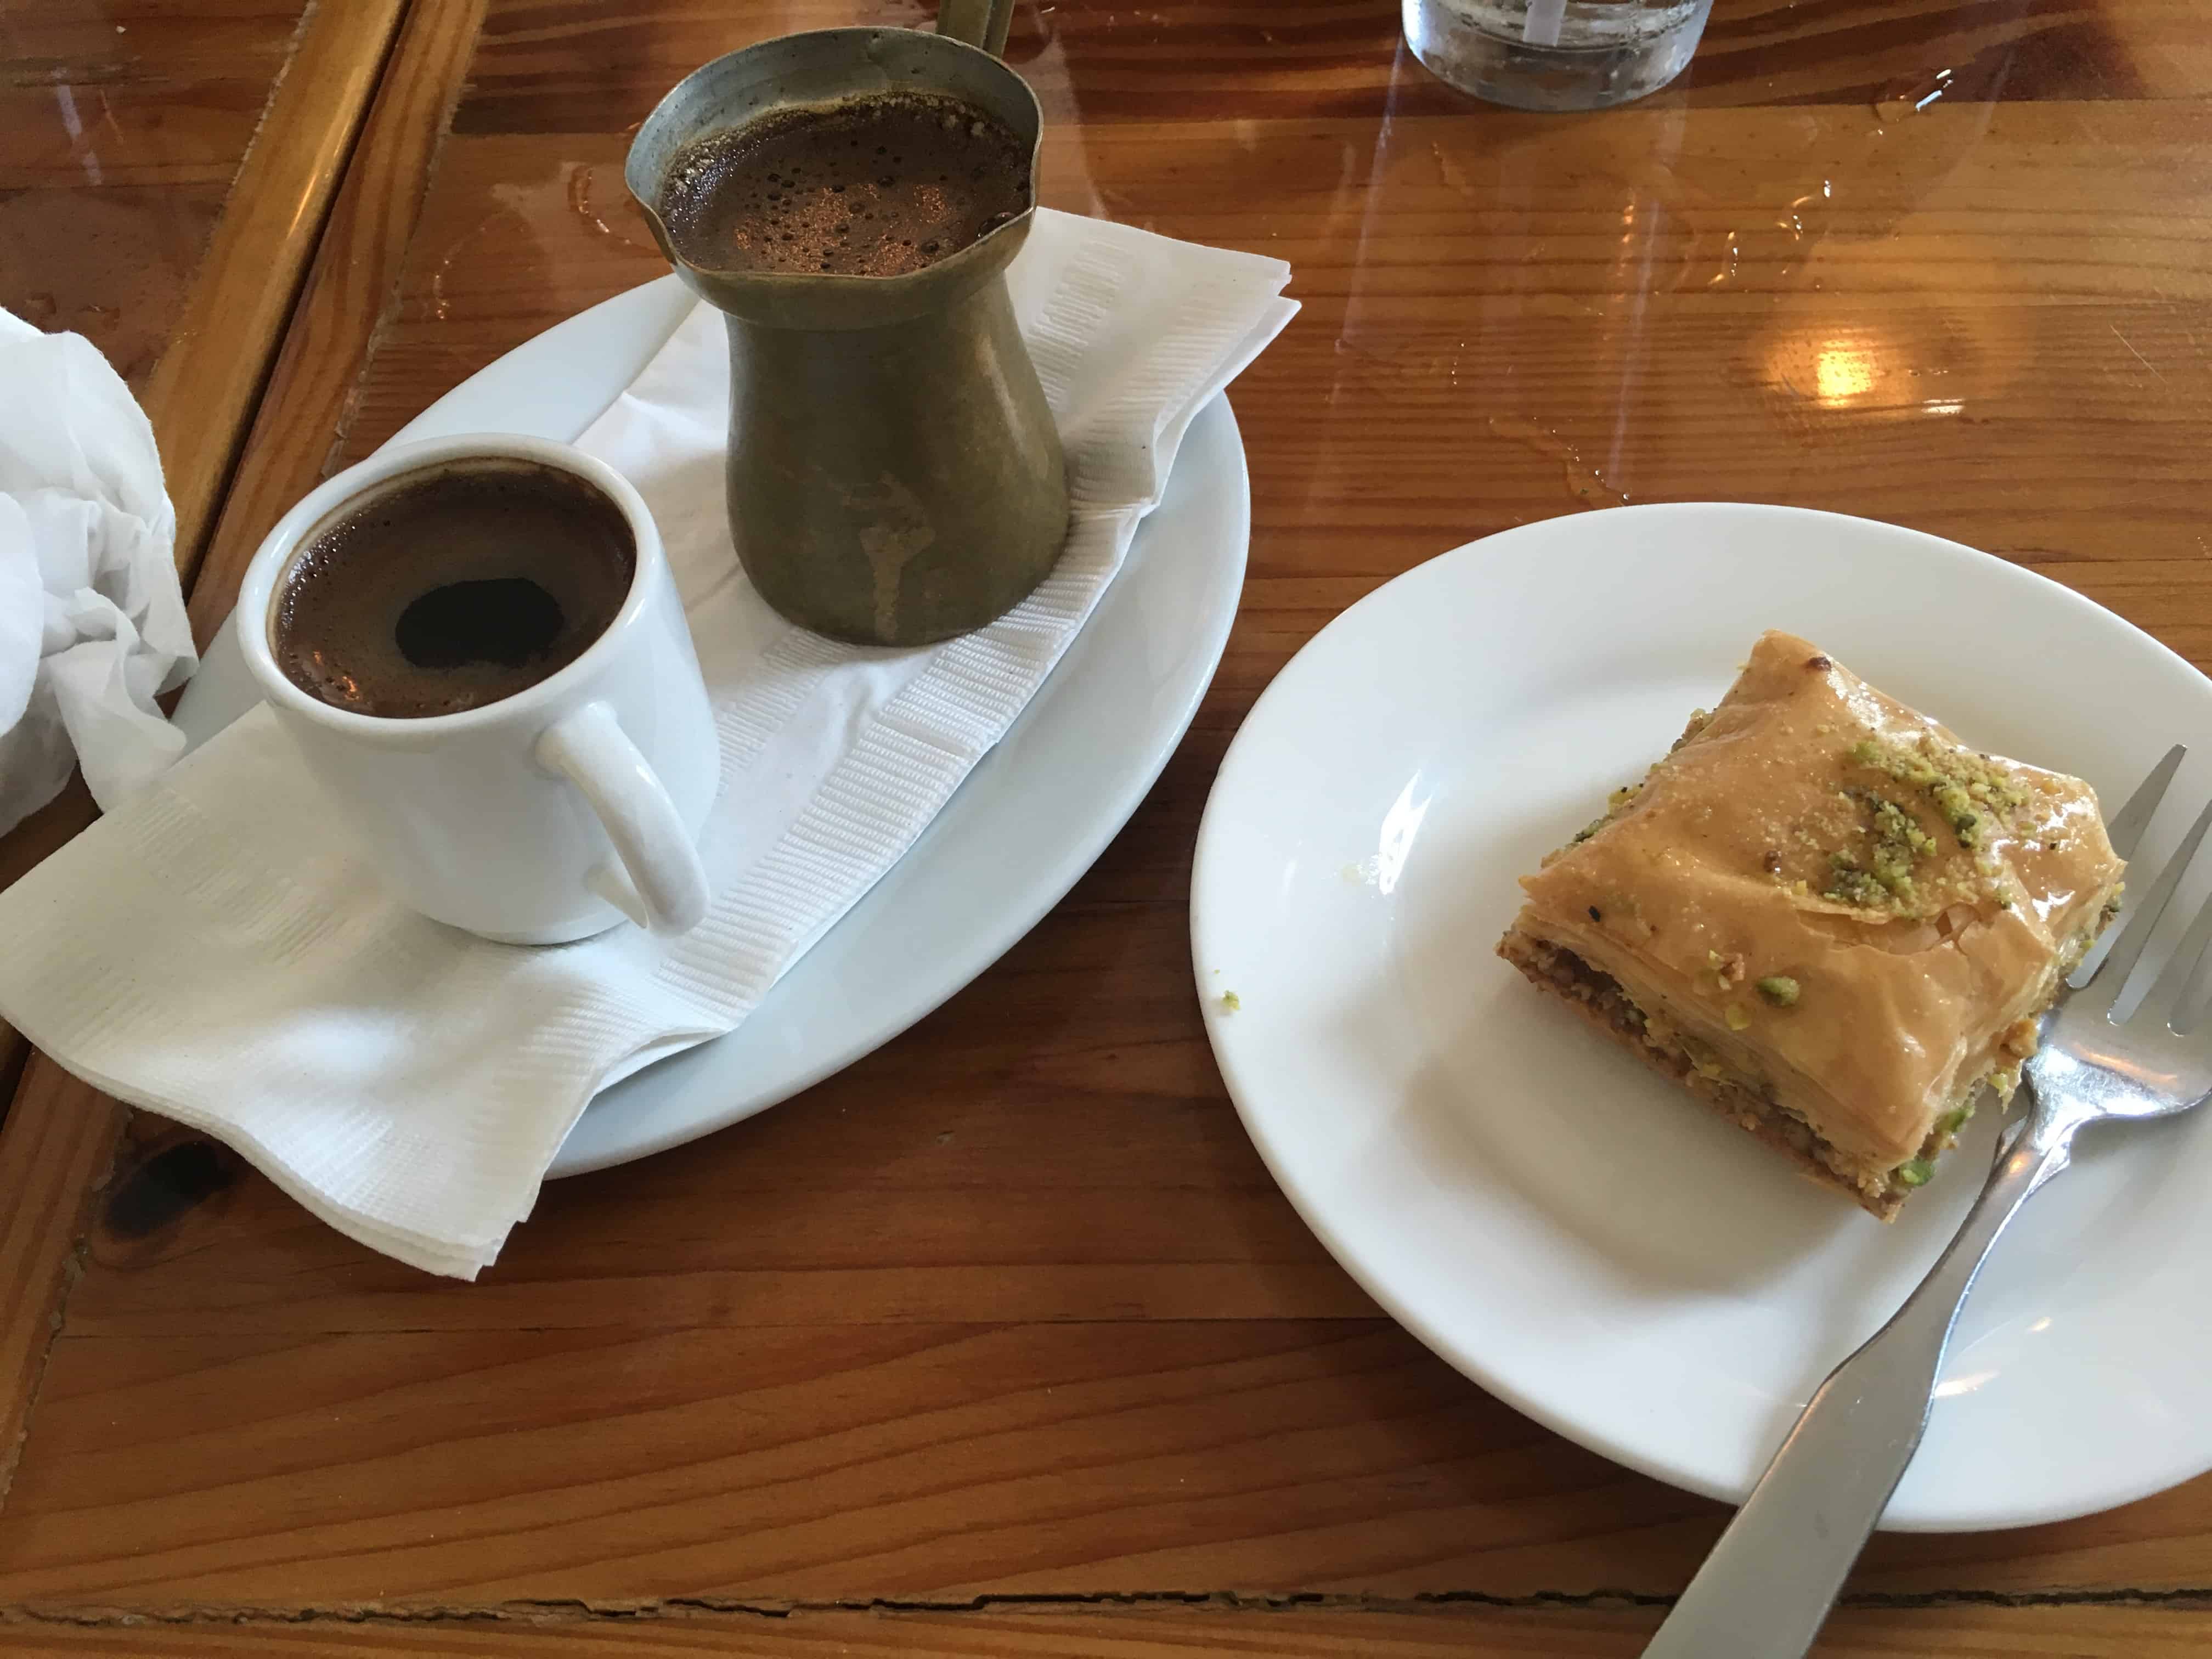 Turkish coffee and baklava at Meditrina in Valparaiso, Indiana